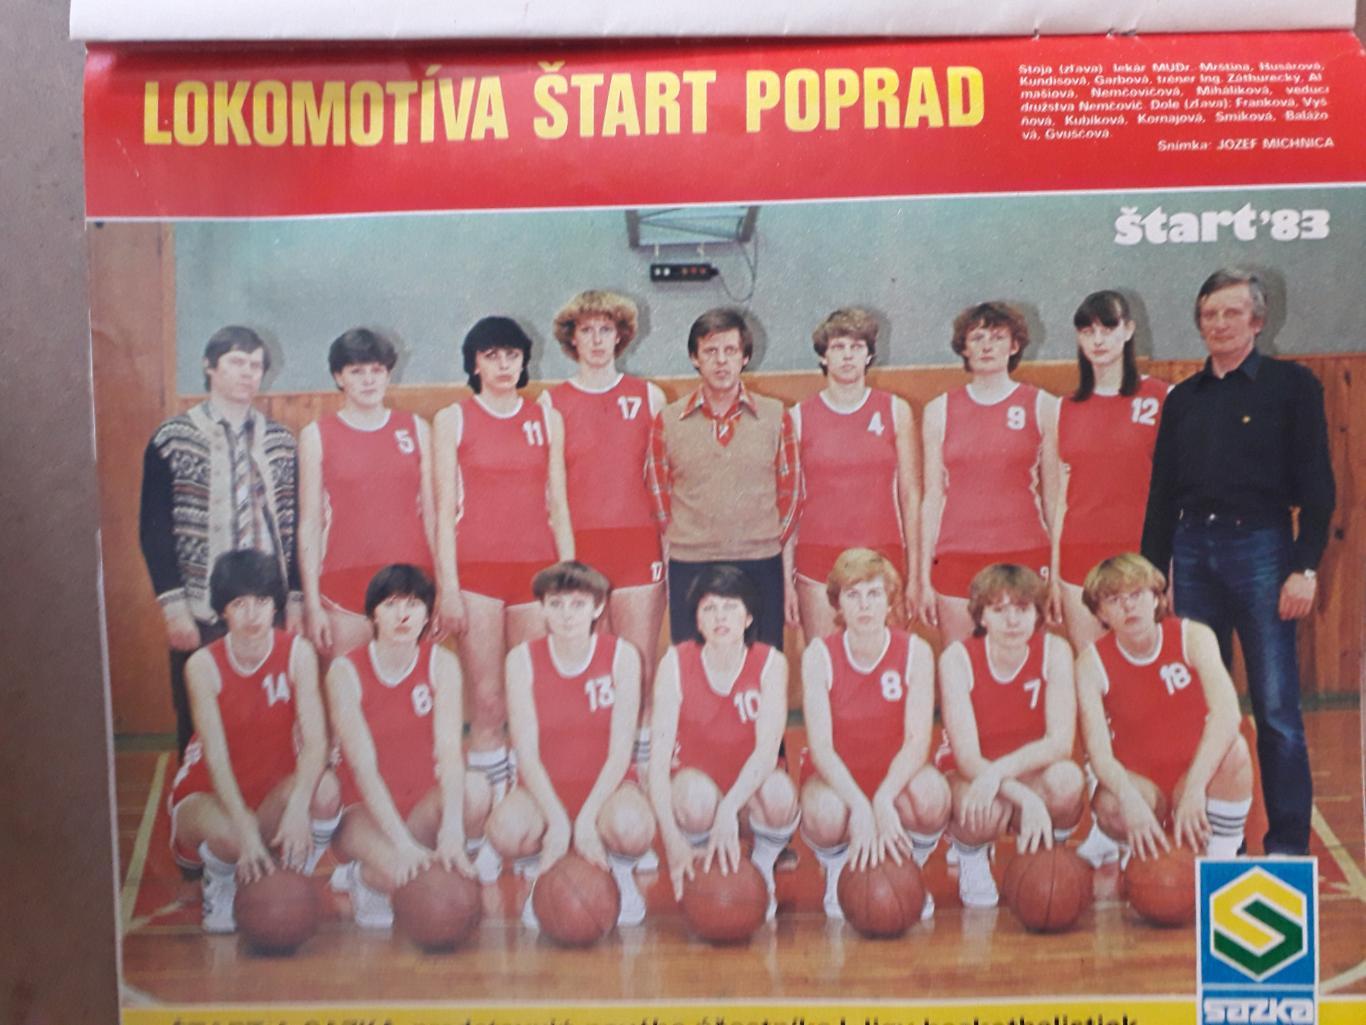 Журнал Start Nr. 32/1983 1